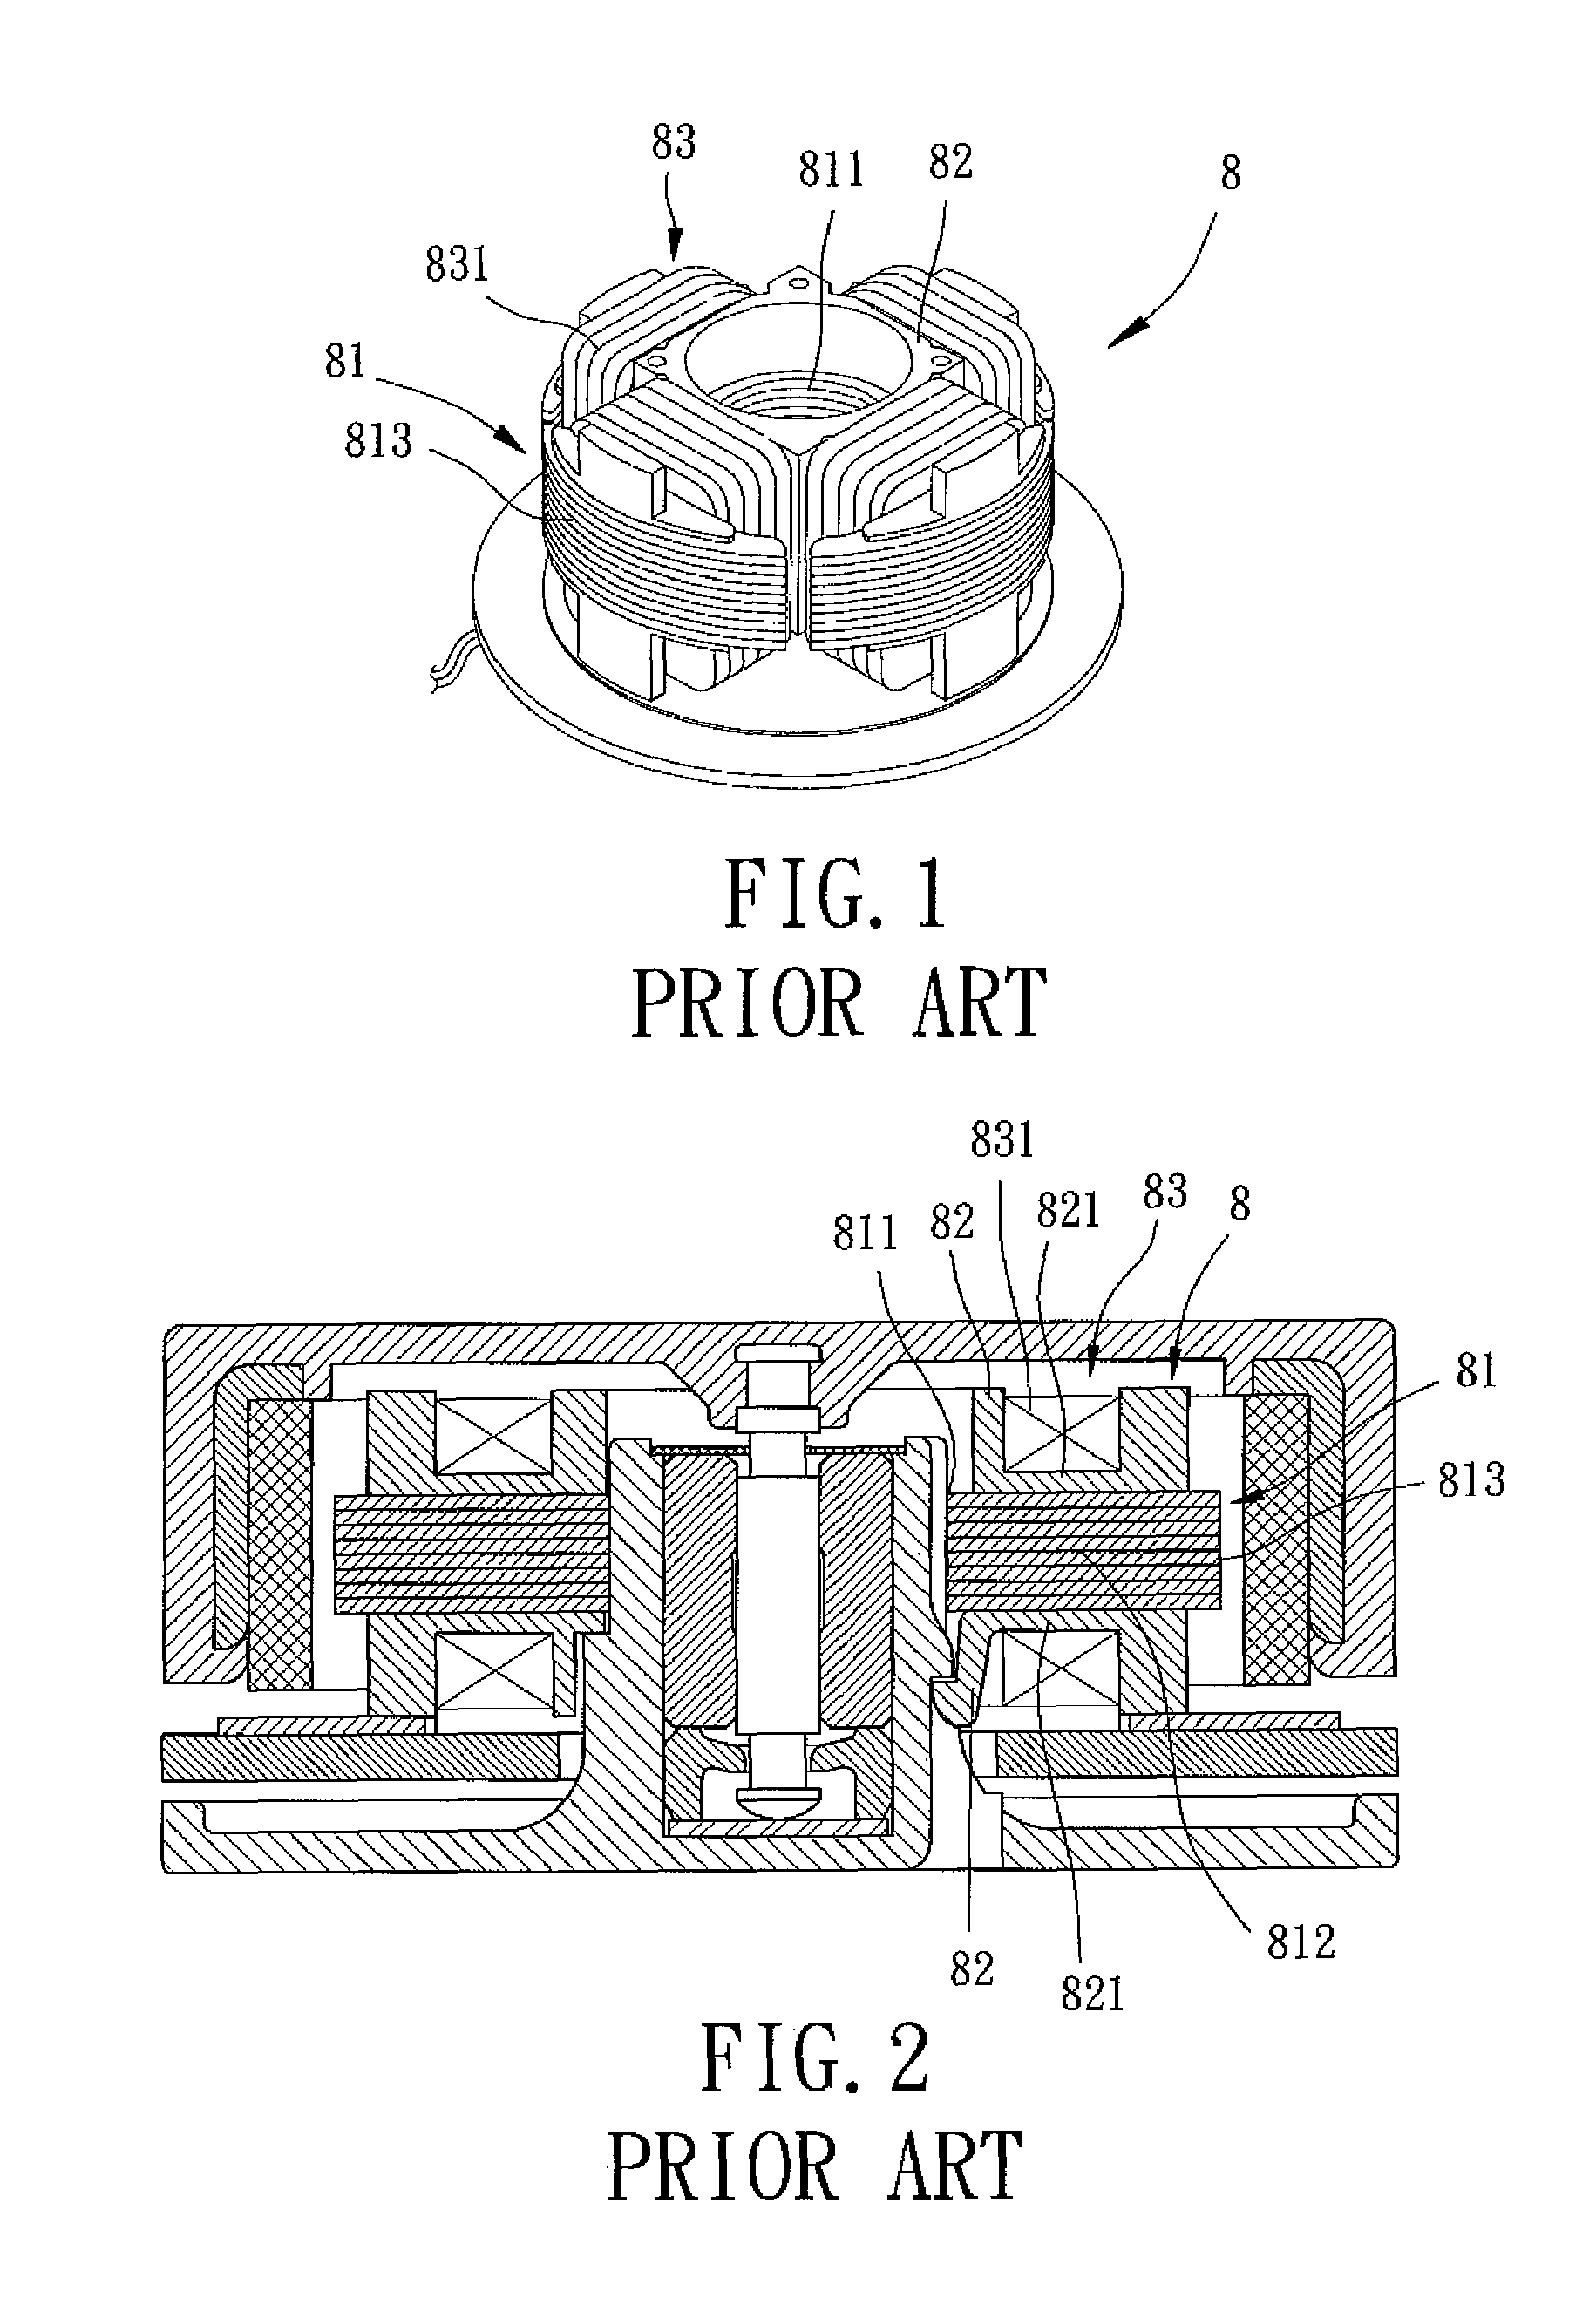 Coil unit for motor stator